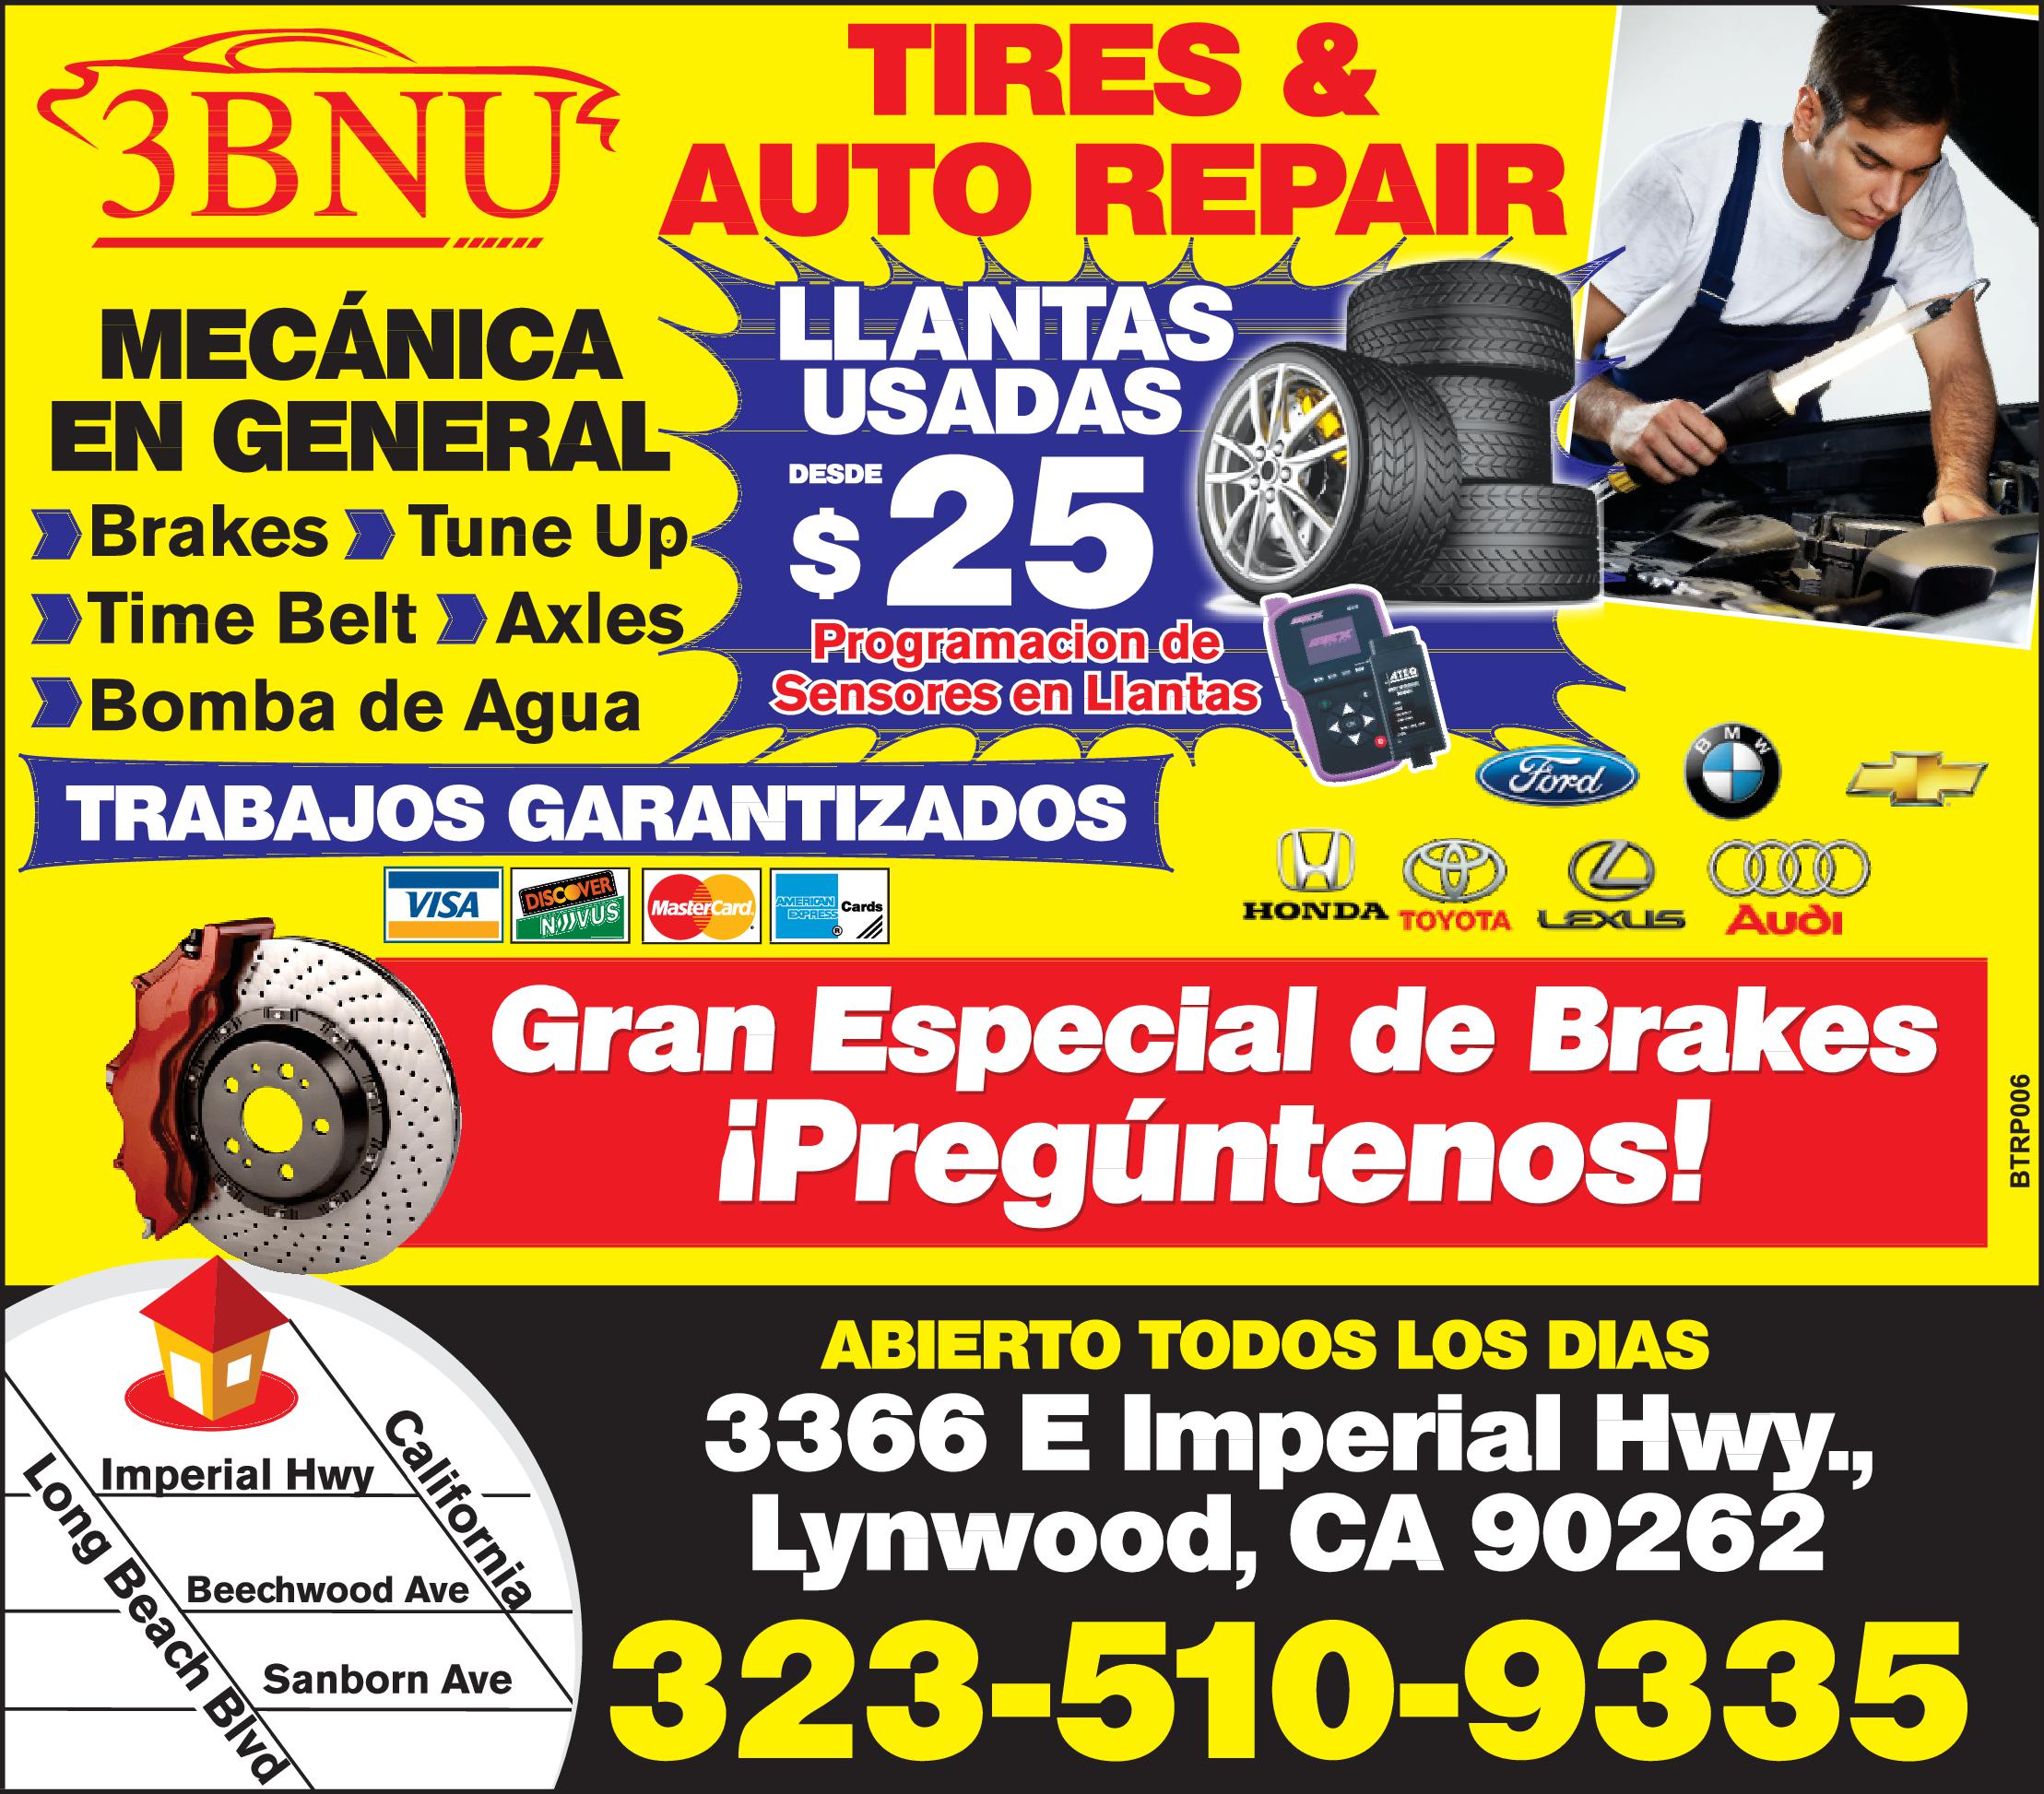 3 BMU Tires & Auto Repair